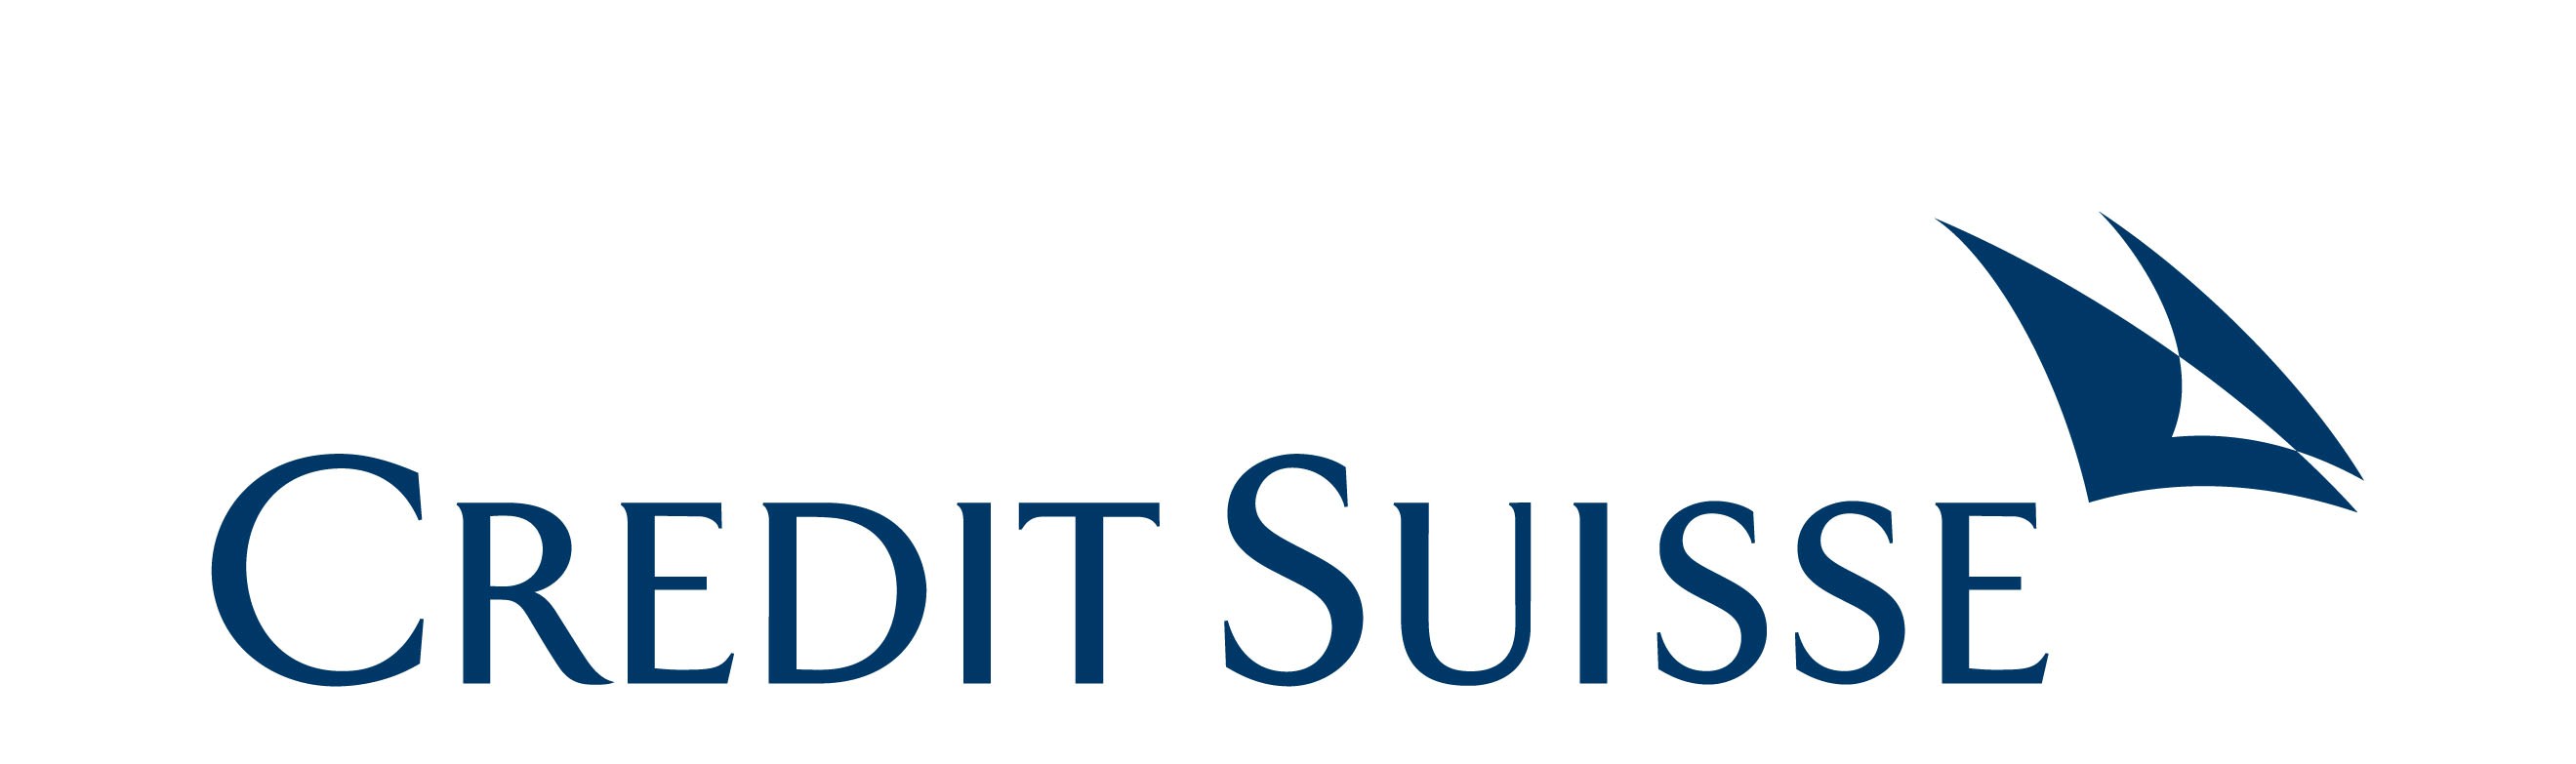 Credit Suisse_Solid_RGB.JPG